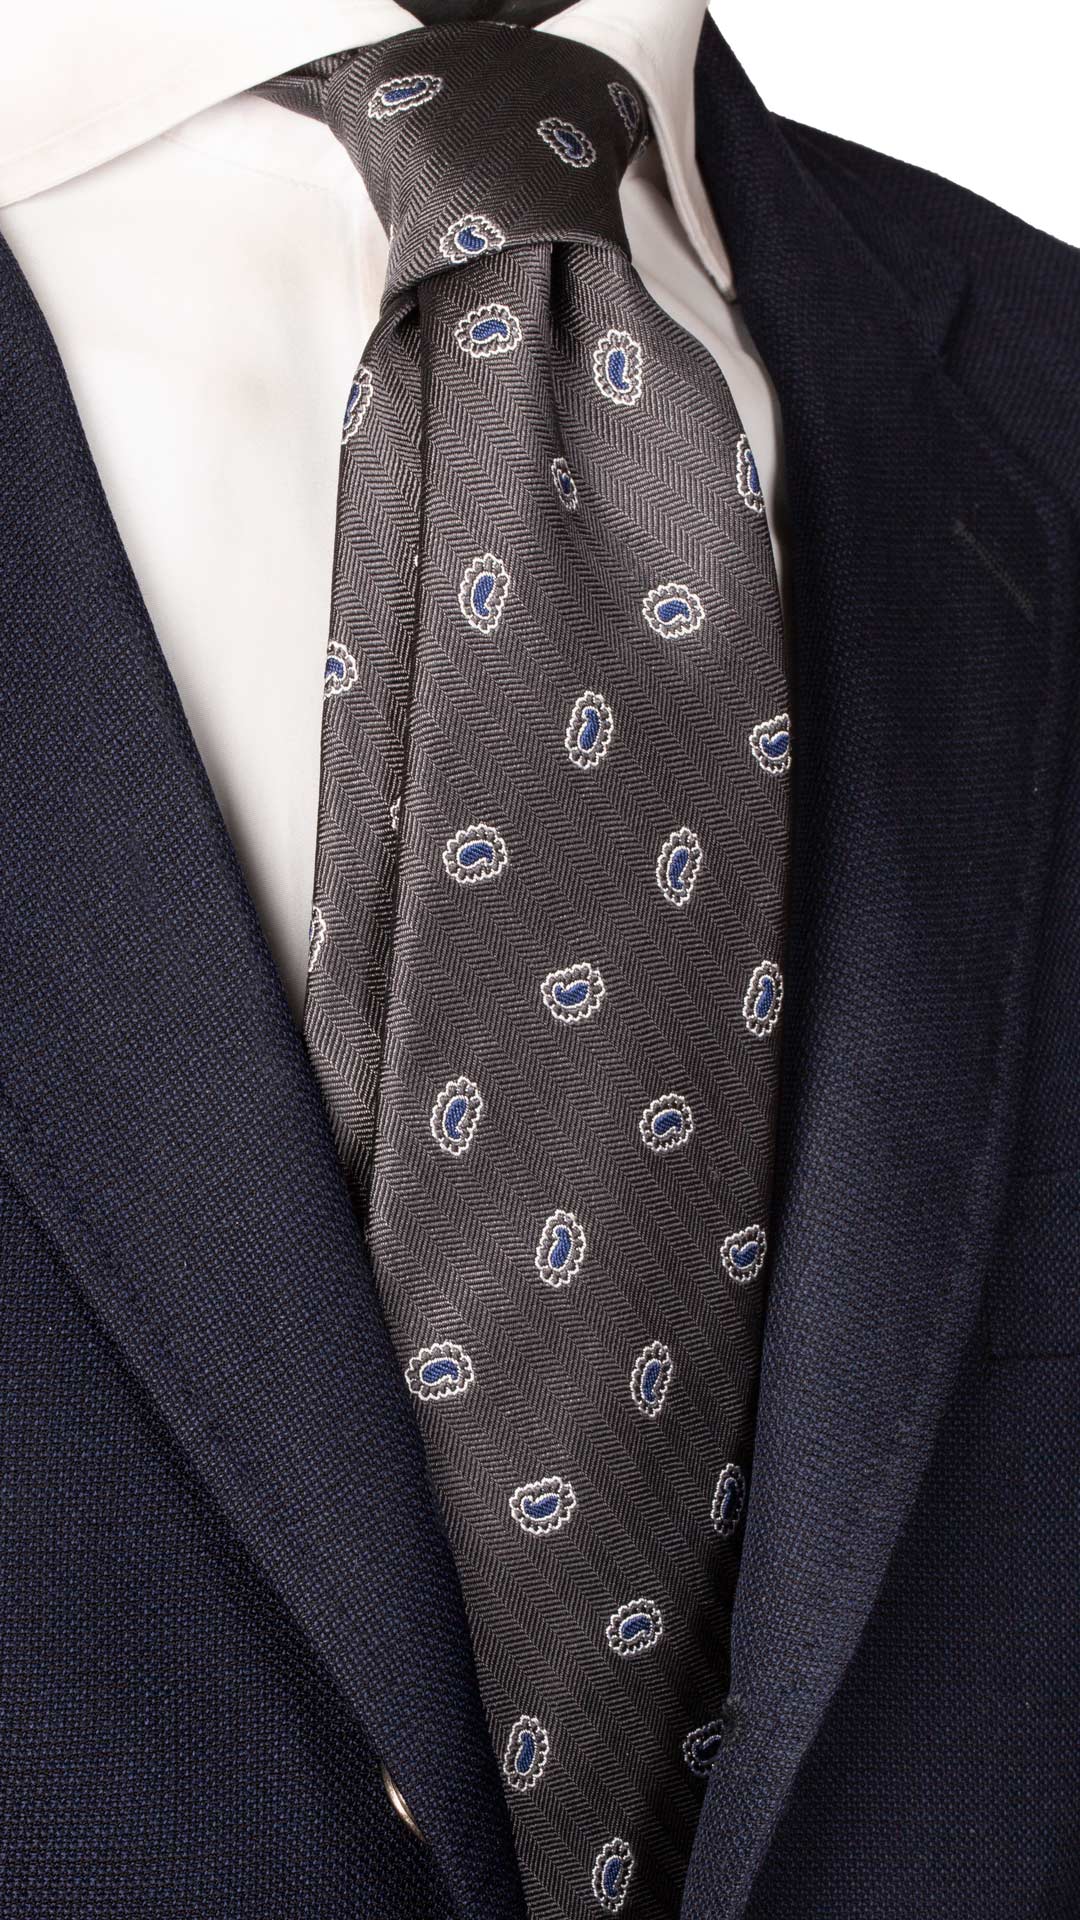 Cravatta da Cerimonia di Seta Grigia Paisley Blu CY6484 Made in Italy Graffeo Cravatte